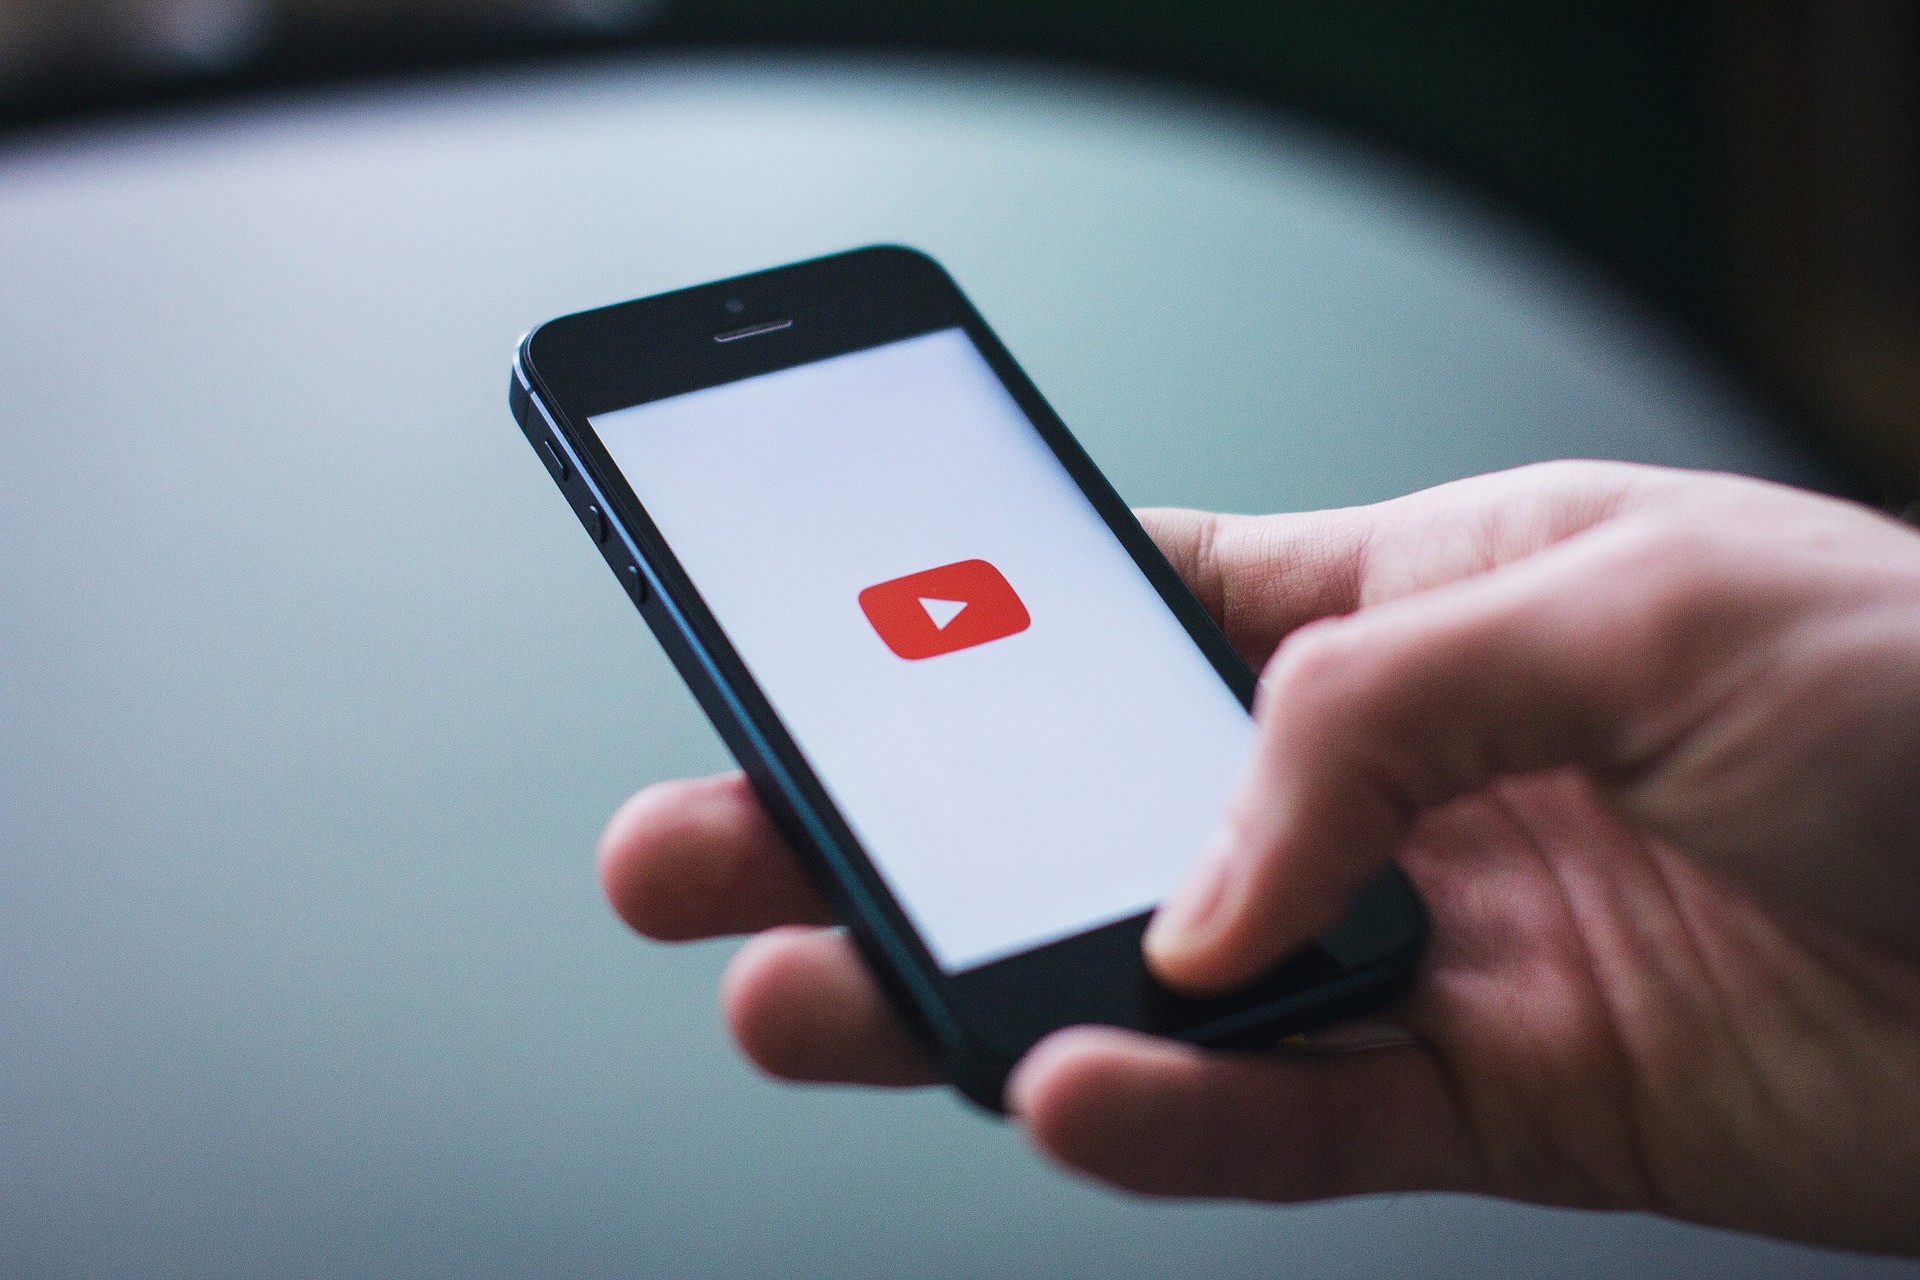 Celulares são os dispositivos preferidos para assistir a vídeos no YouTube (Foto: Pixabay)